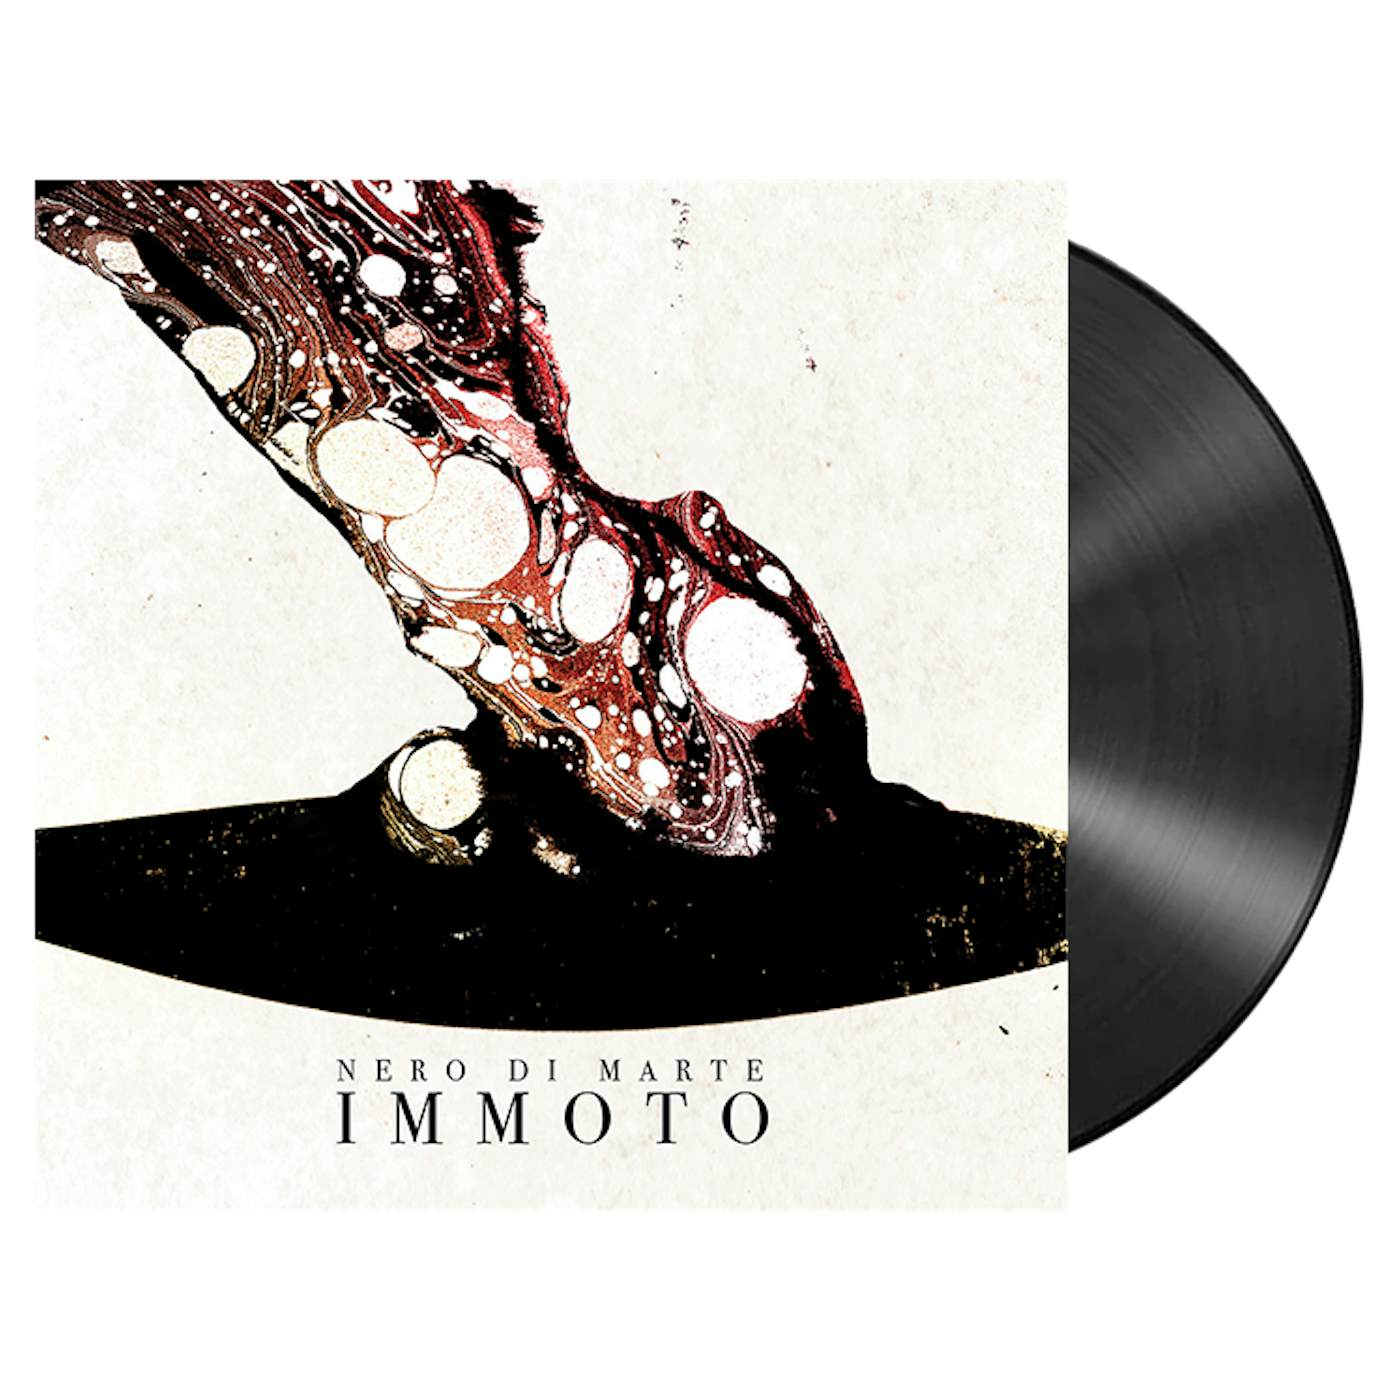 NERO DI MARTE - 'Immoto' 2xLP (Vinyl)